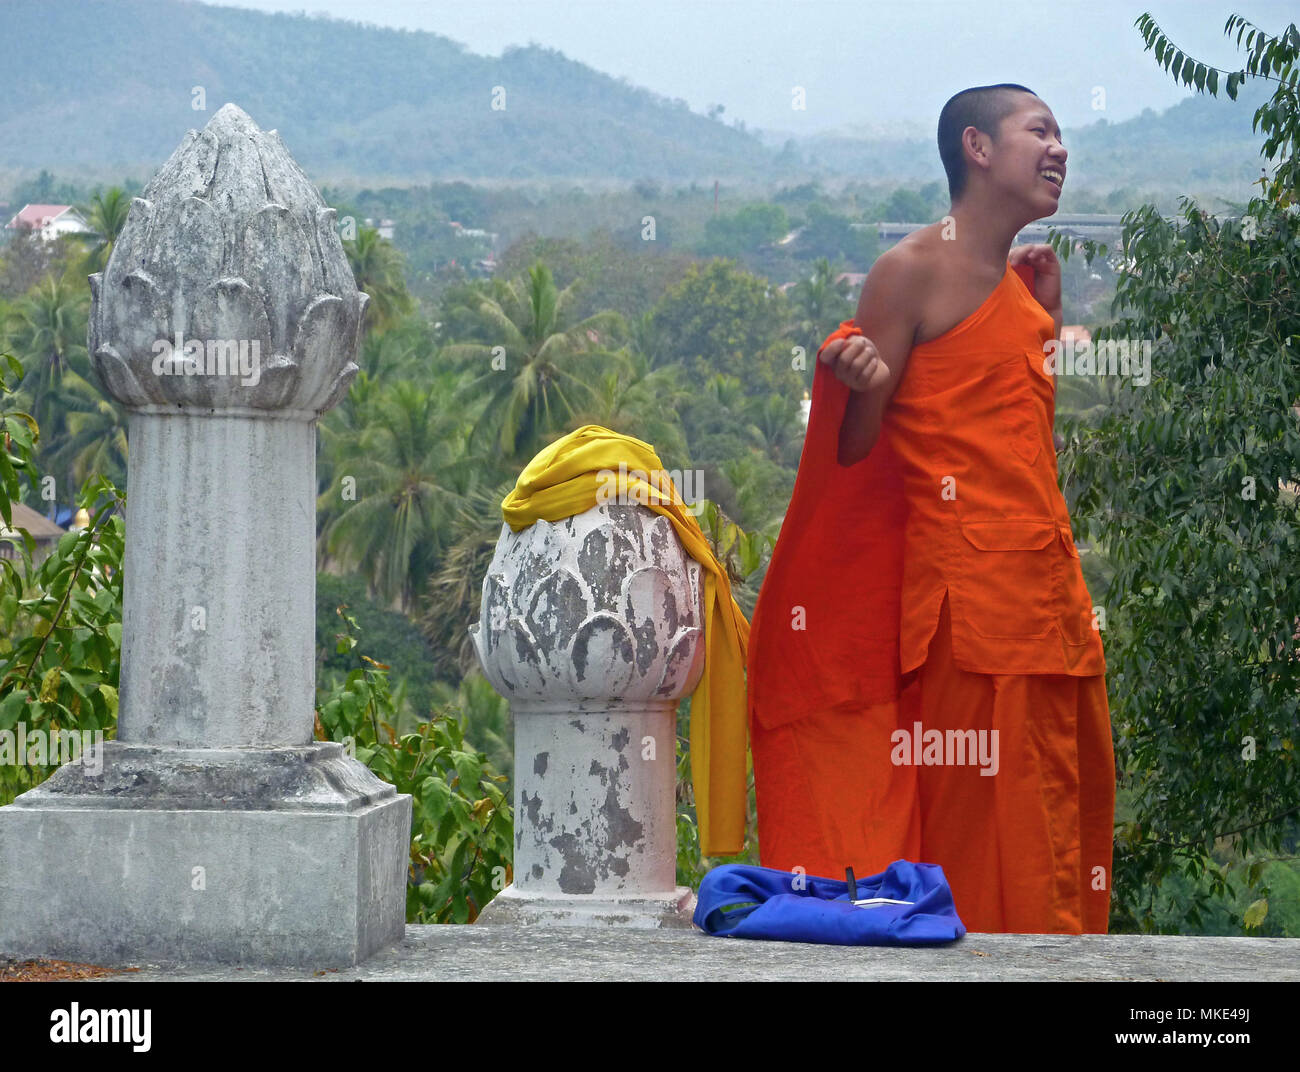 Ein buddhistischer Mönch mit orangefarbenen Robe steht auf einem Hügel mit Lotus Stammzellen Schnitzereien. Stockfoto